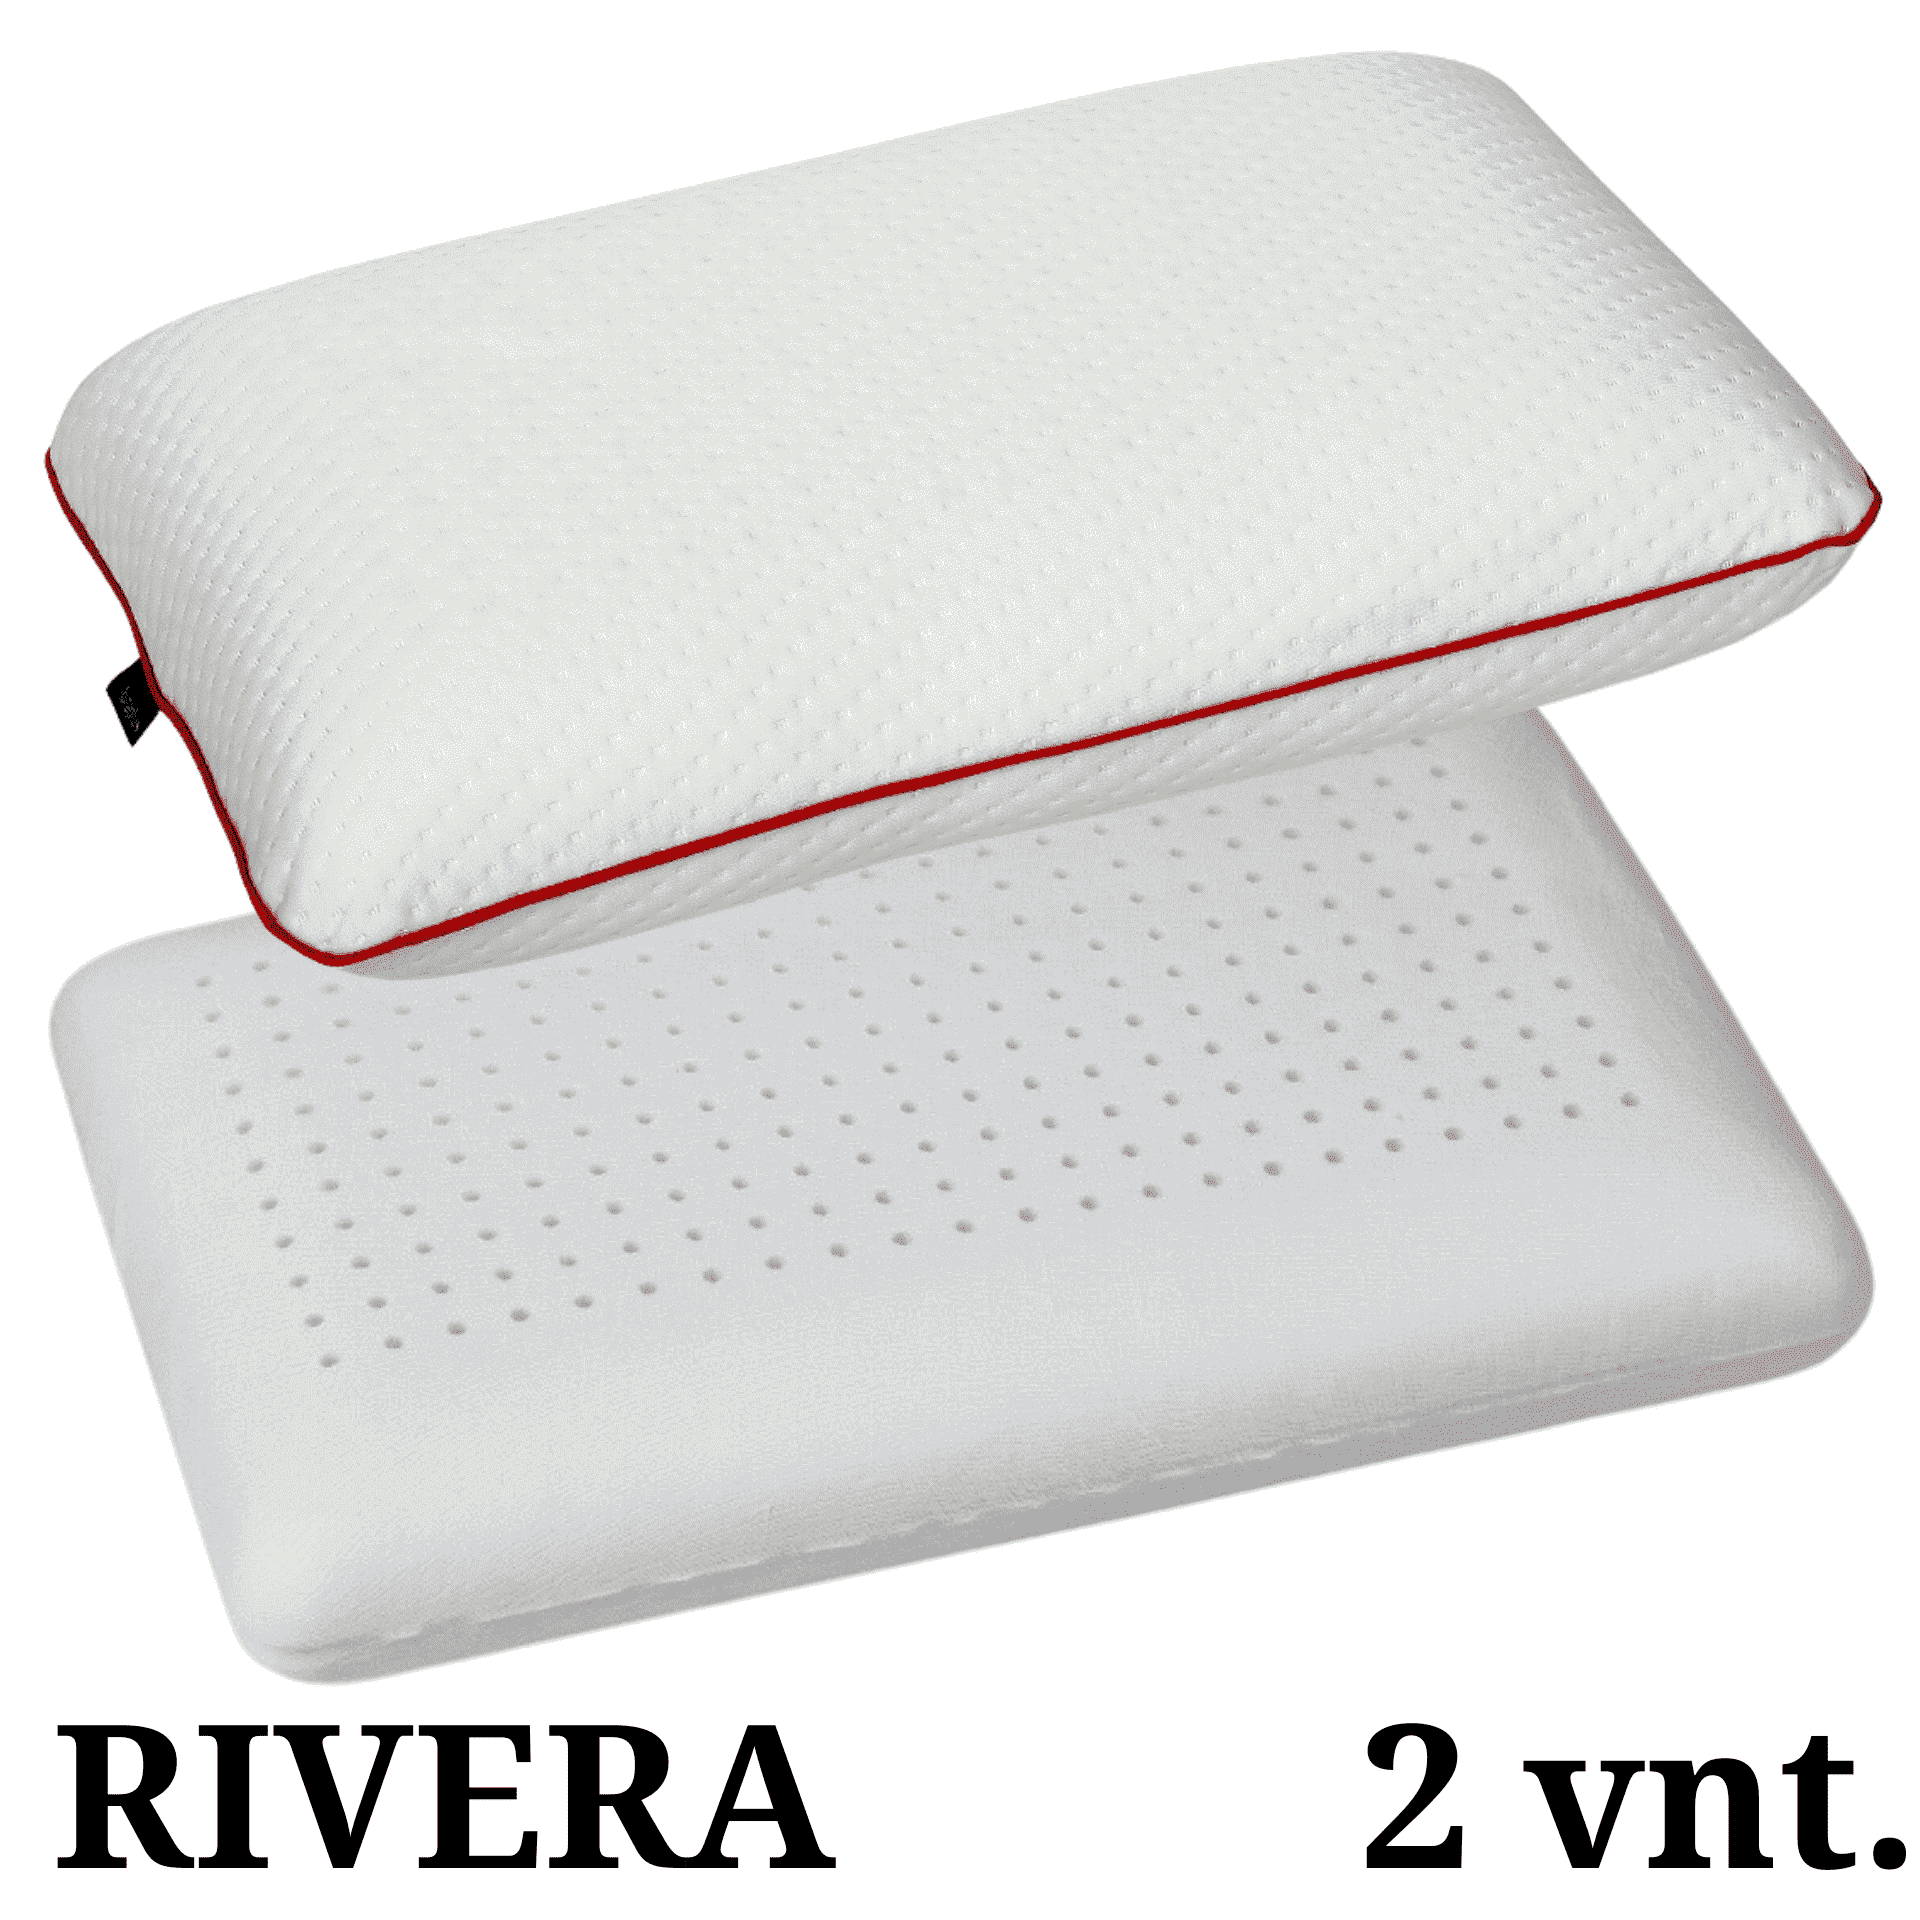 Pagalvė RIVERA 2 vnt. (130.00 €) 40x65x10 – klasikinės formos pagalvė, turinti ortopedinių savybių. Tai tobula atrama galvai, kaklui ir nugarai. Miego metu atsipalaiduoja įsitempę raumenys ir atslėgsta susikaupusi įtampa. Patogi, iš viskoelastinių putų poliuretano pagaminta pagalvė yra profilio skylutėmis, kas ją daro dar laidesnę orui ir reaguoja į kūno temperatūrą.